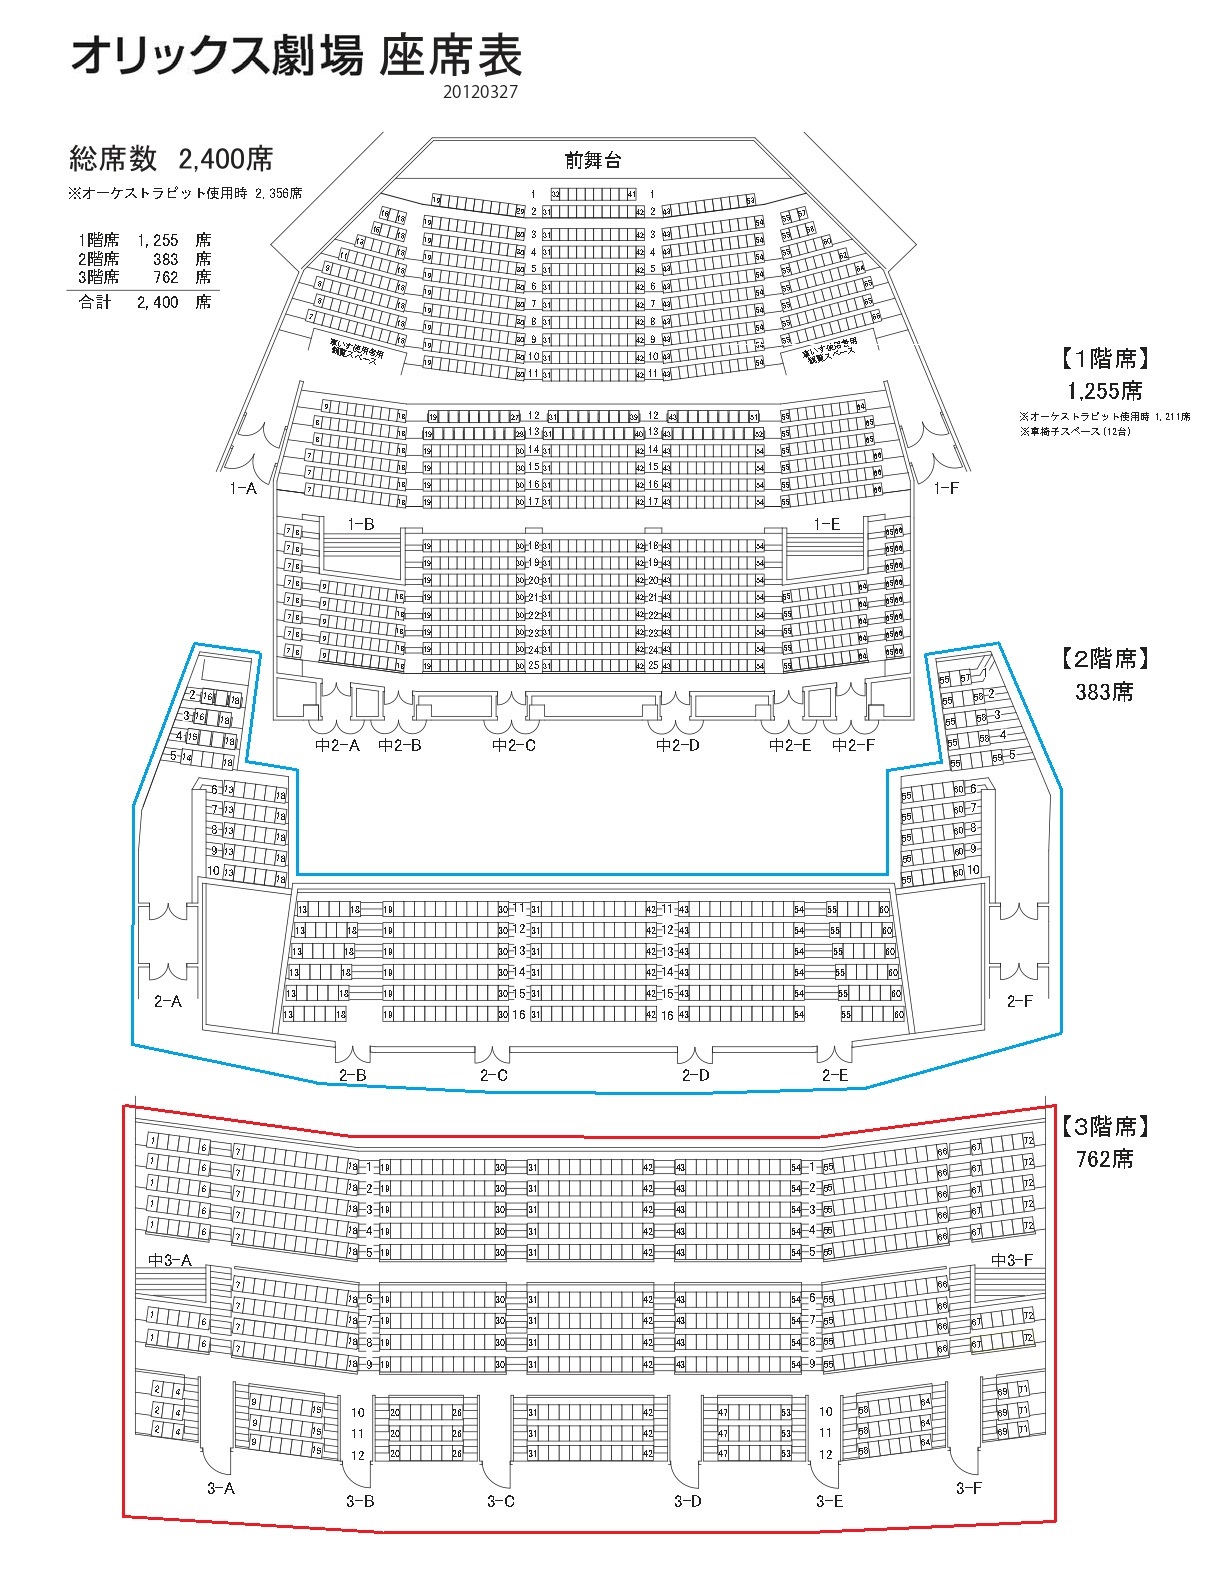 オリックス劇場の座席表 画像付きで2階と3階について解説します